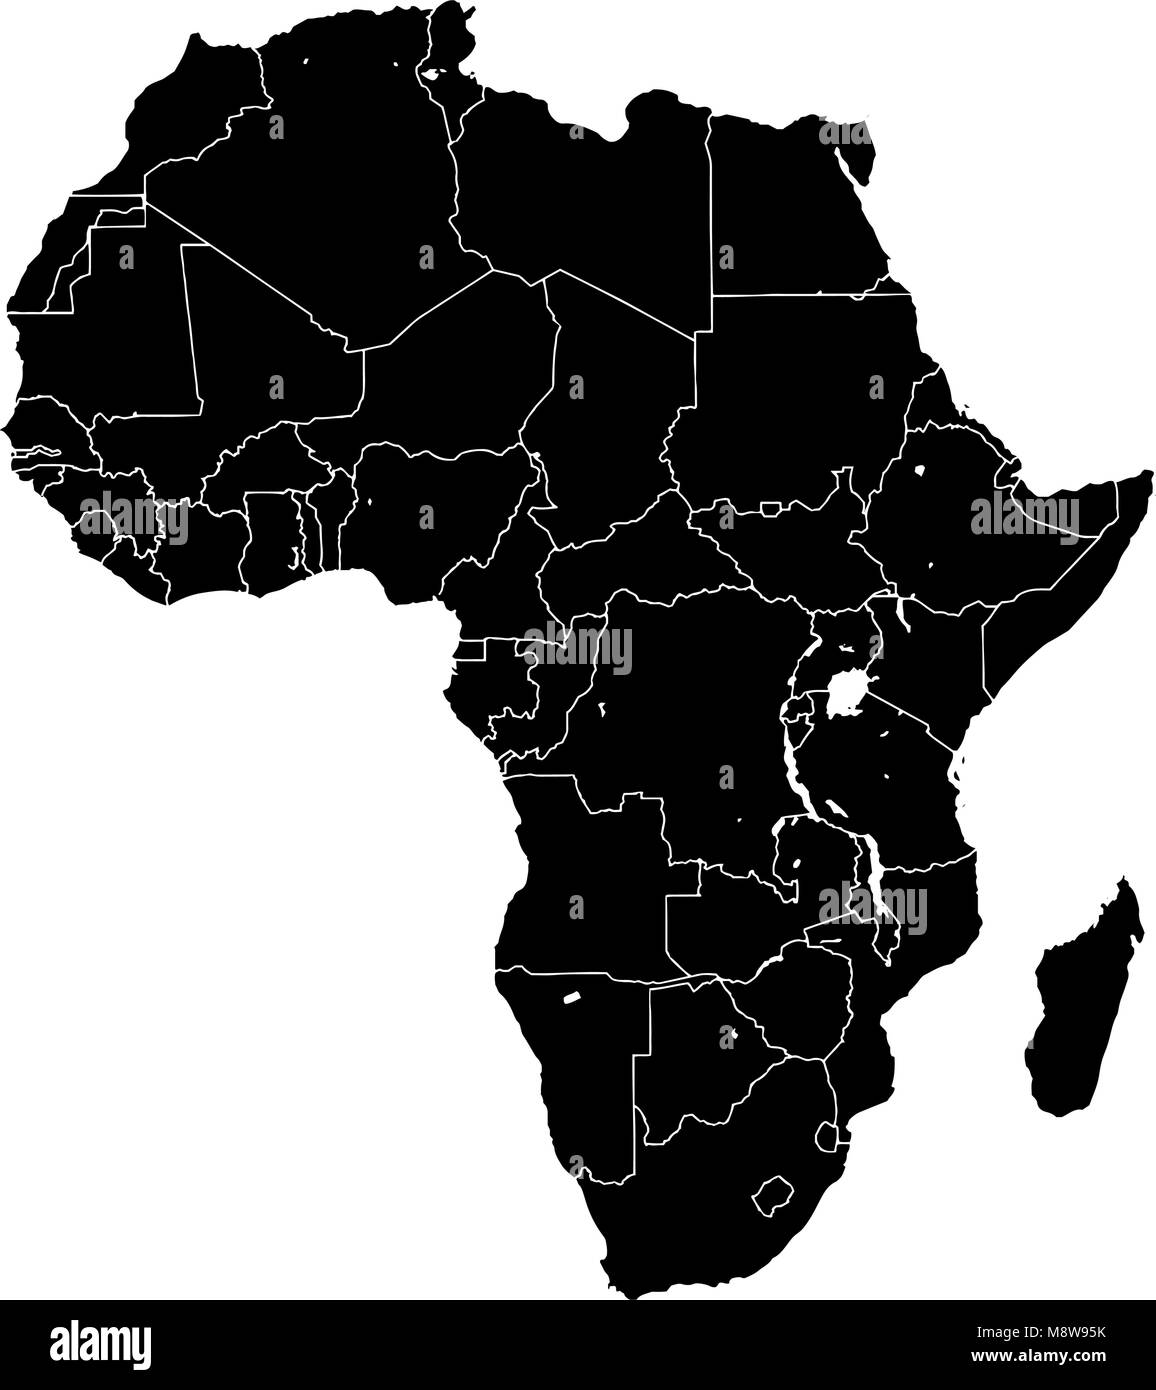 Afrika silhouette Vektorkarte. Schwarze und weiße Version verwendbar für Travel Marketing, Immobilien und Bildung. Stock Vektor